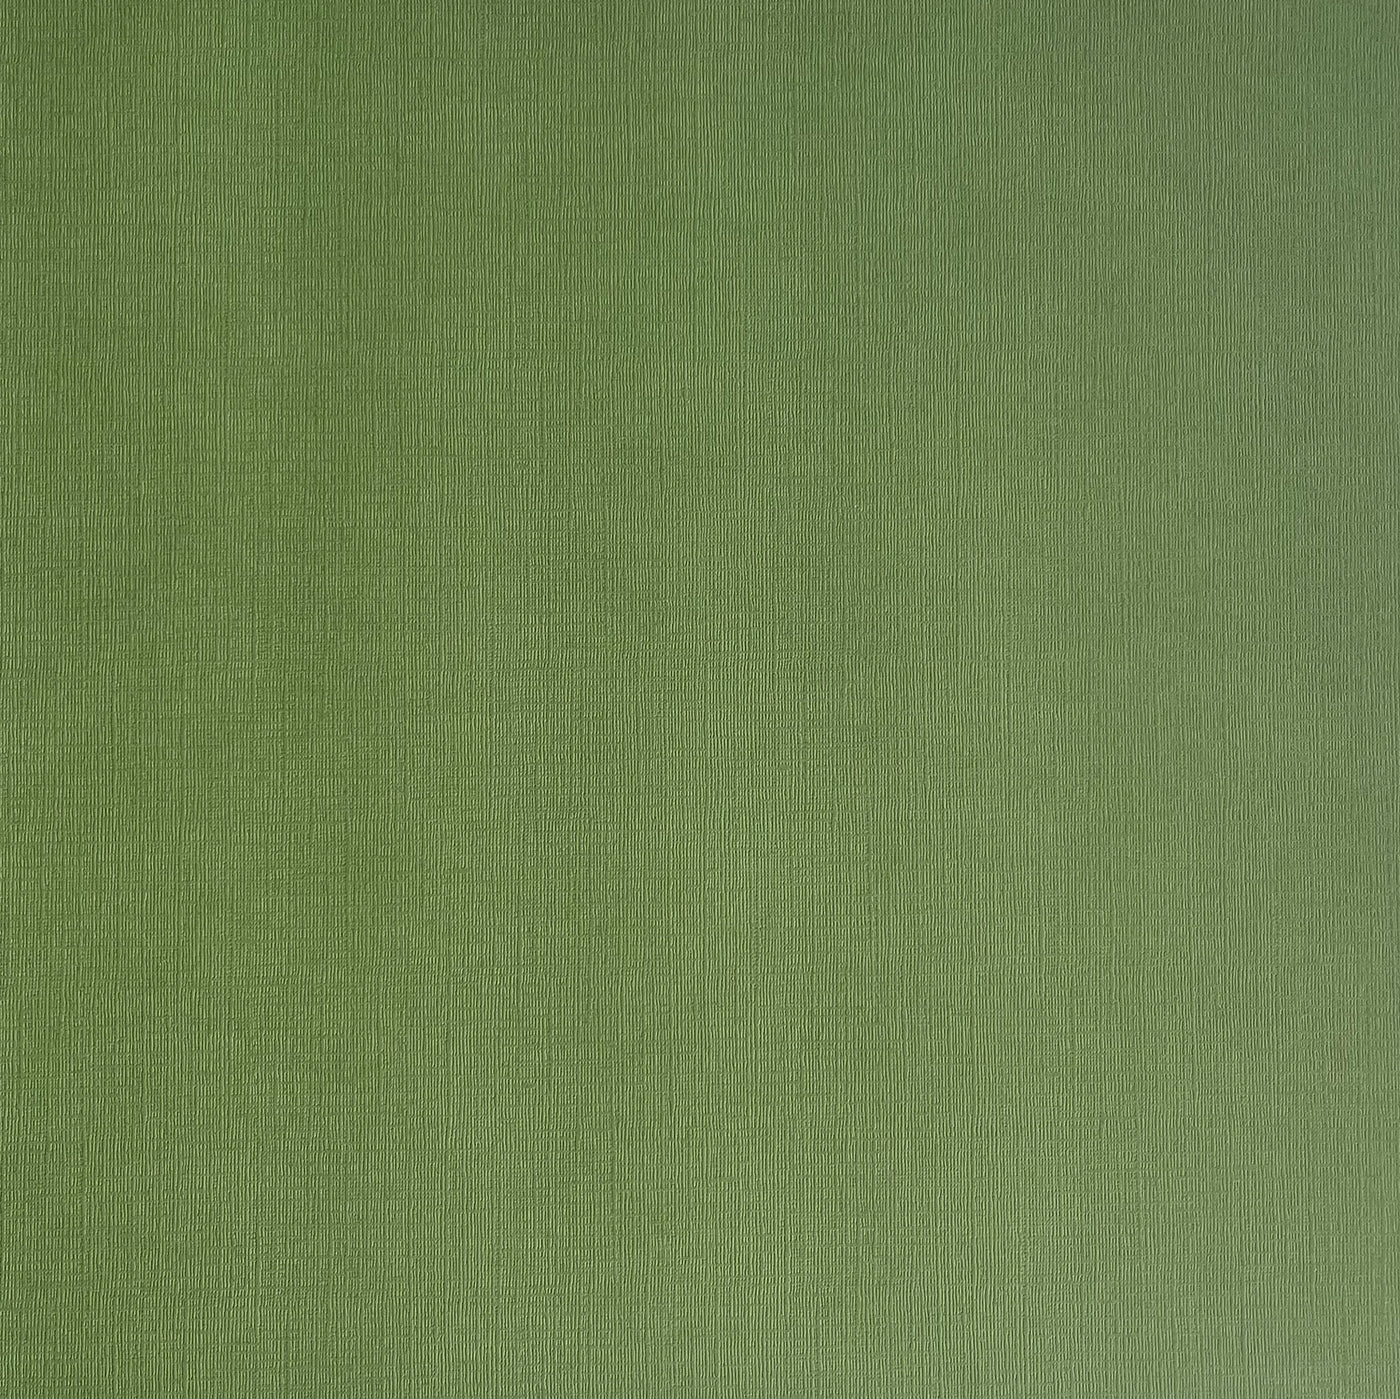 Desert Cactus - Textured 12x12 Cardstock - Green canvas scrapbook paper